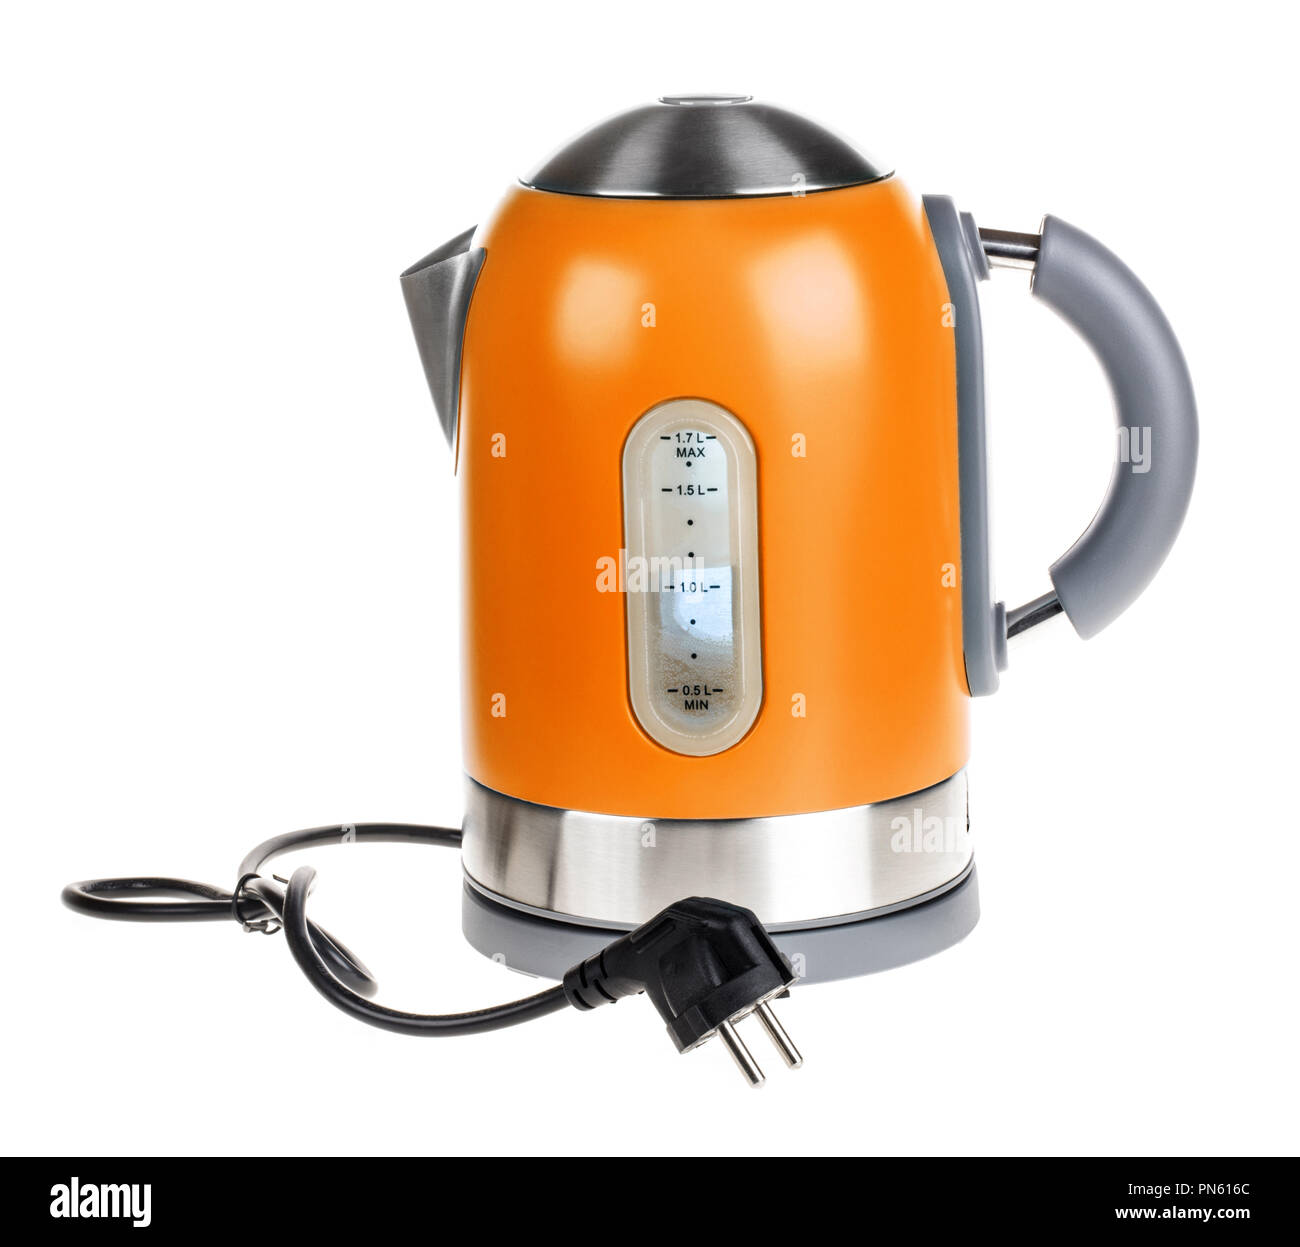 Orange electric kettle isolated on white Stock Photo